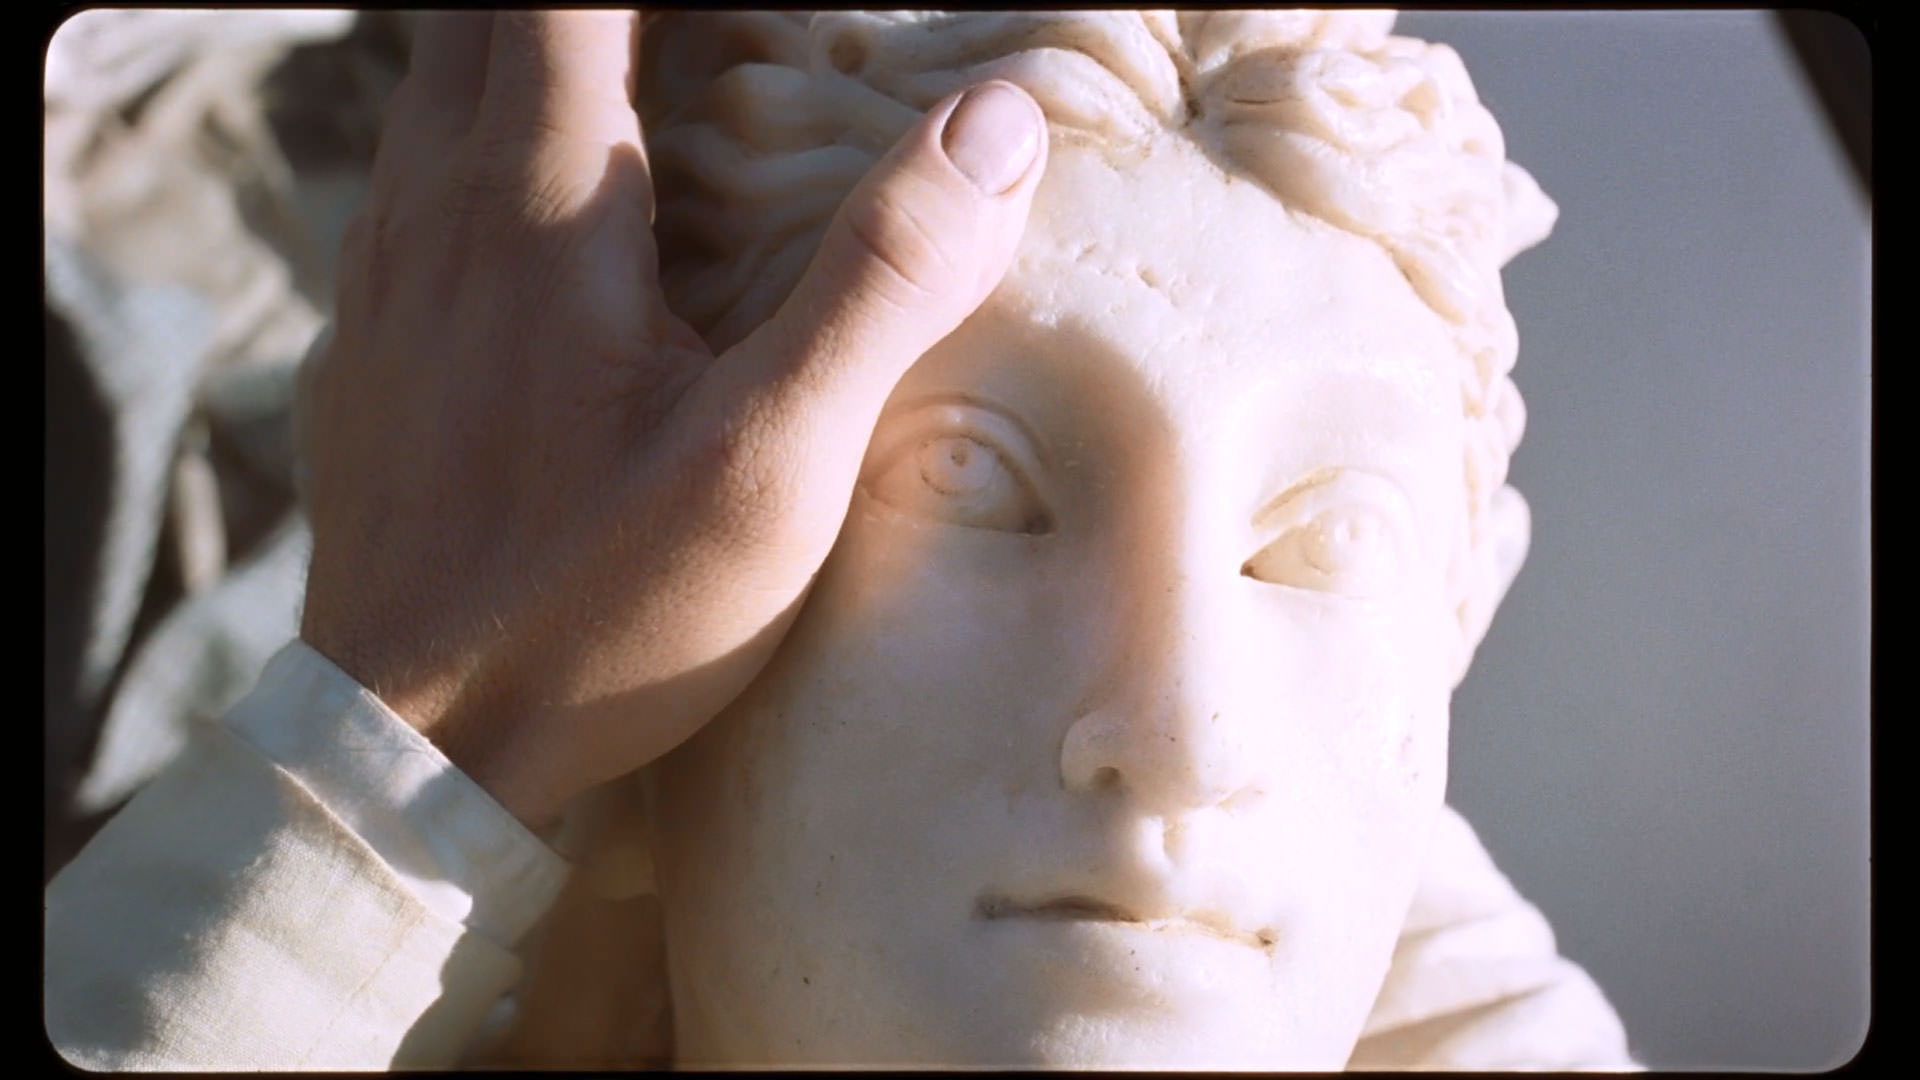 دستان مردی سفیدپوش روی صورت یک مجسمه‌ی سفید قرار گرفته است که آفتاب روی آن تابیده در نمایی از فیلم کیمرا به کارگردانی آلیچه رورواکر